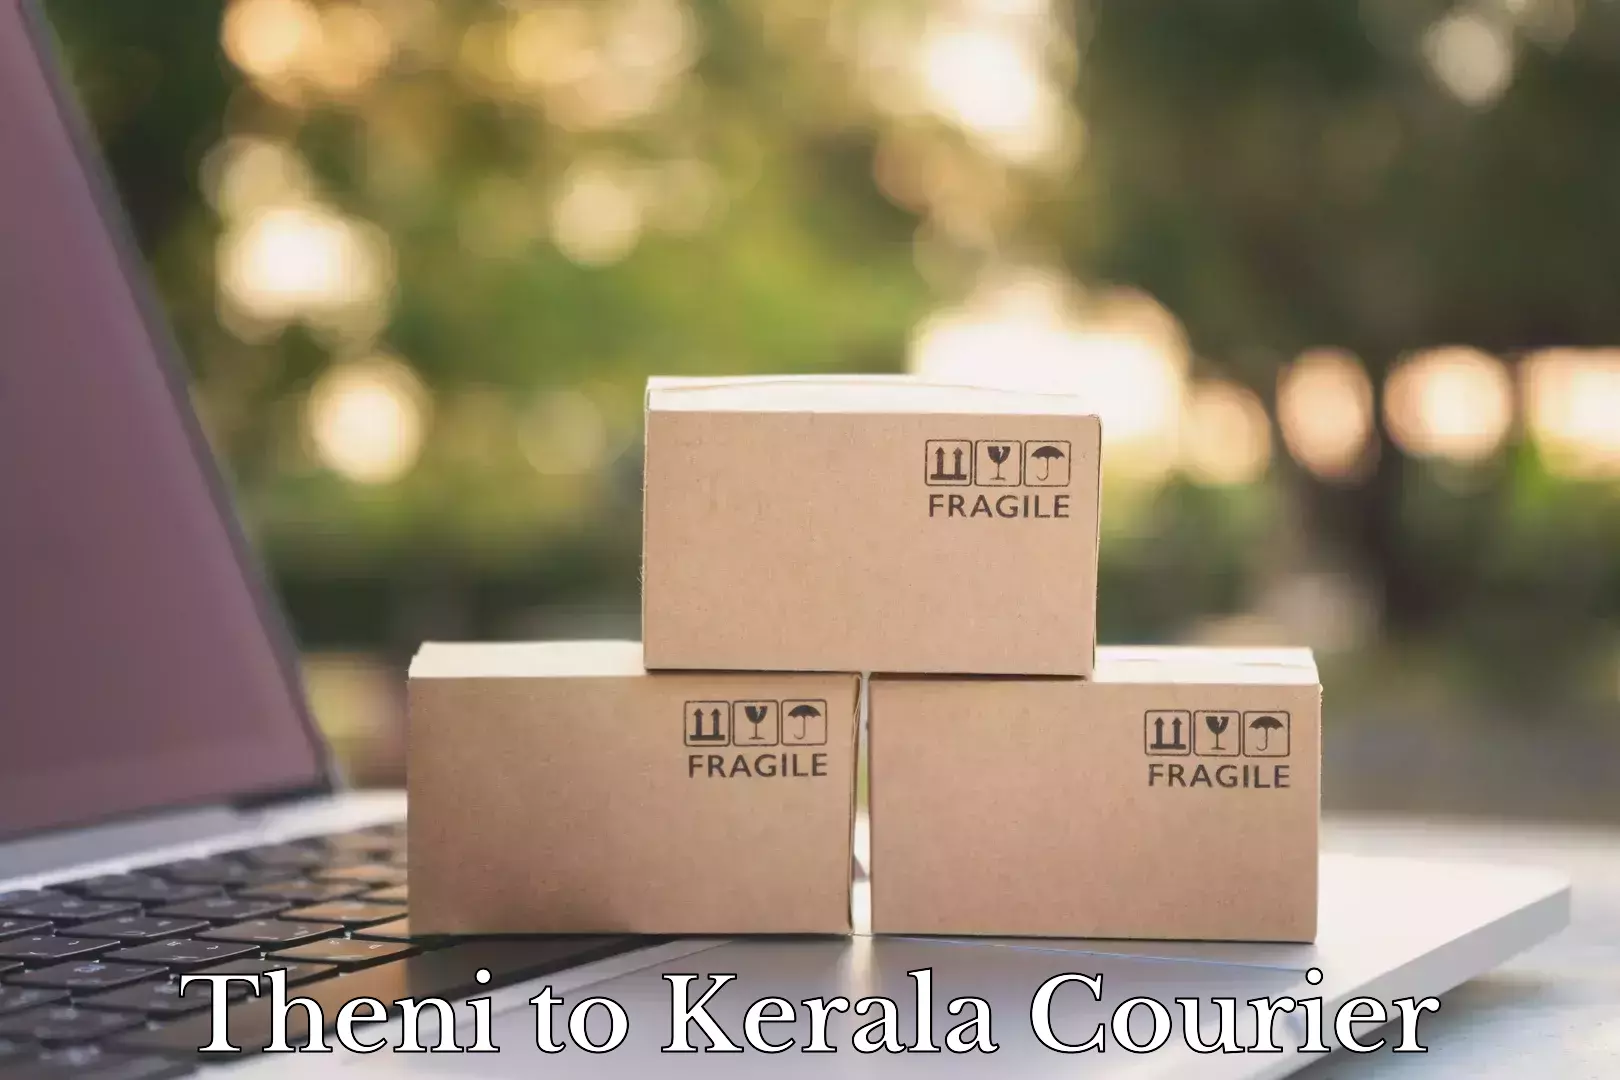 Door-to-door relocation services Theni to Kerala